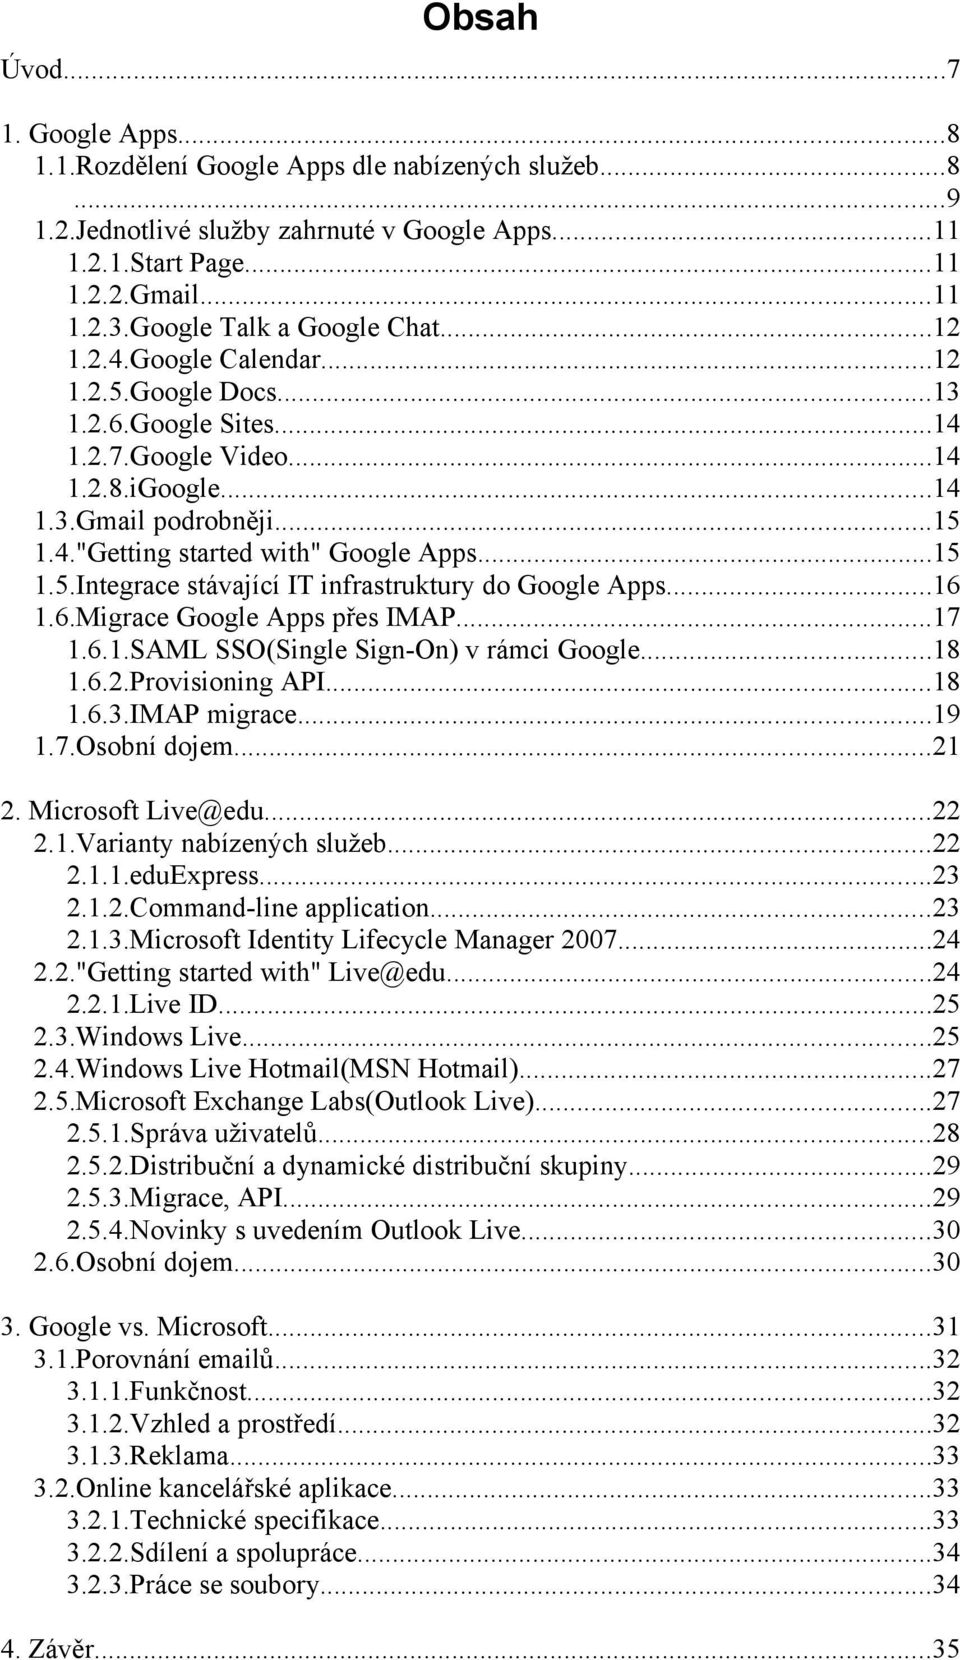 ..15 1.5.Integrace stávající IT infrastruktury do Google Apps...16 1.6.Migrace Google Apps přes IMAP...17 1.6.1.SAML SSO(Single Sign-On) v rámci Google...18 1.6.2.Provisioning API...18 1.6.3.